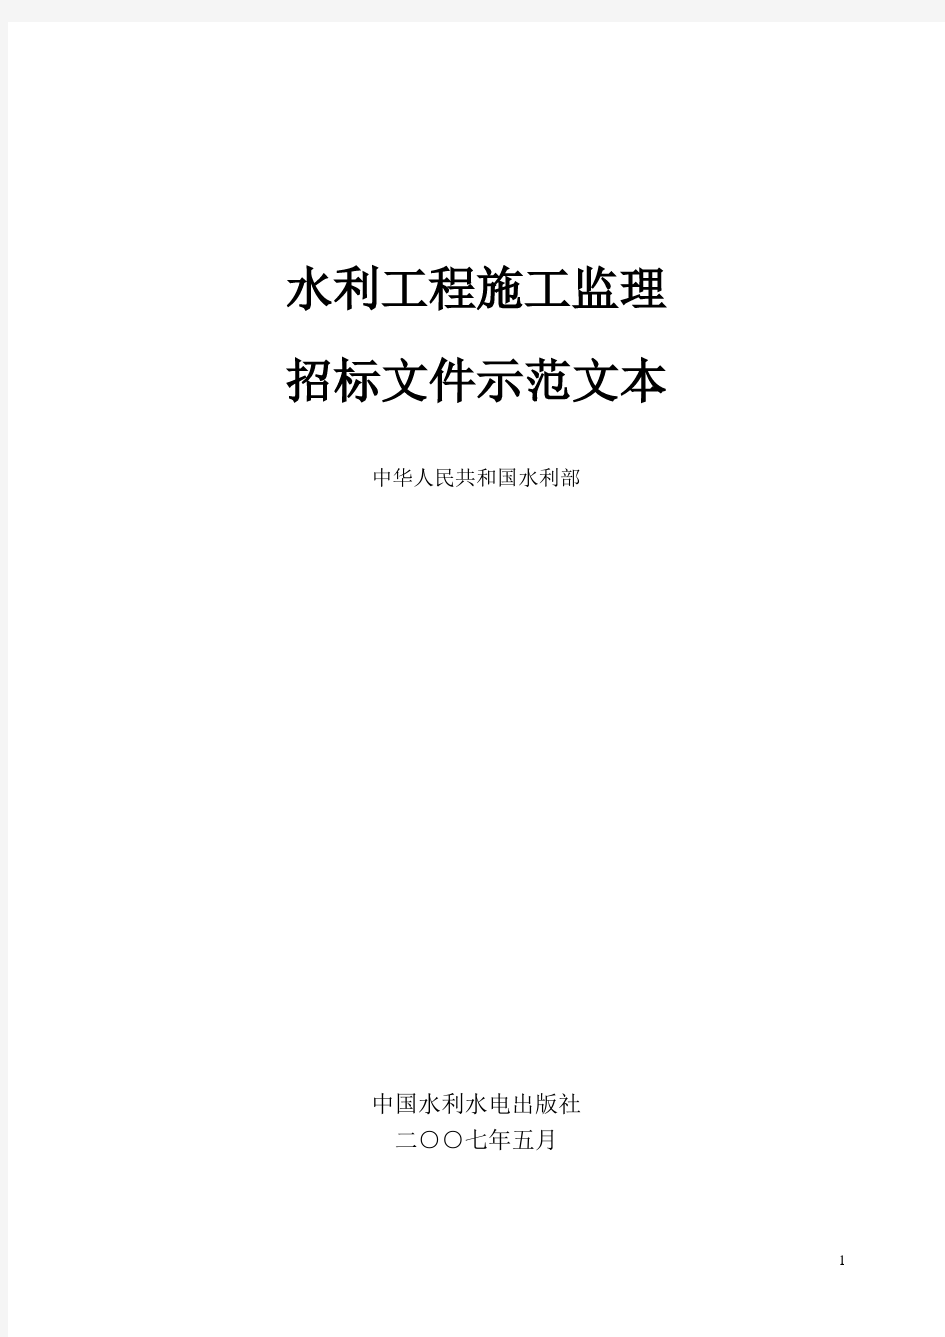 水利工程施工监理招标文件示范文本水监管(2007)165号[1]